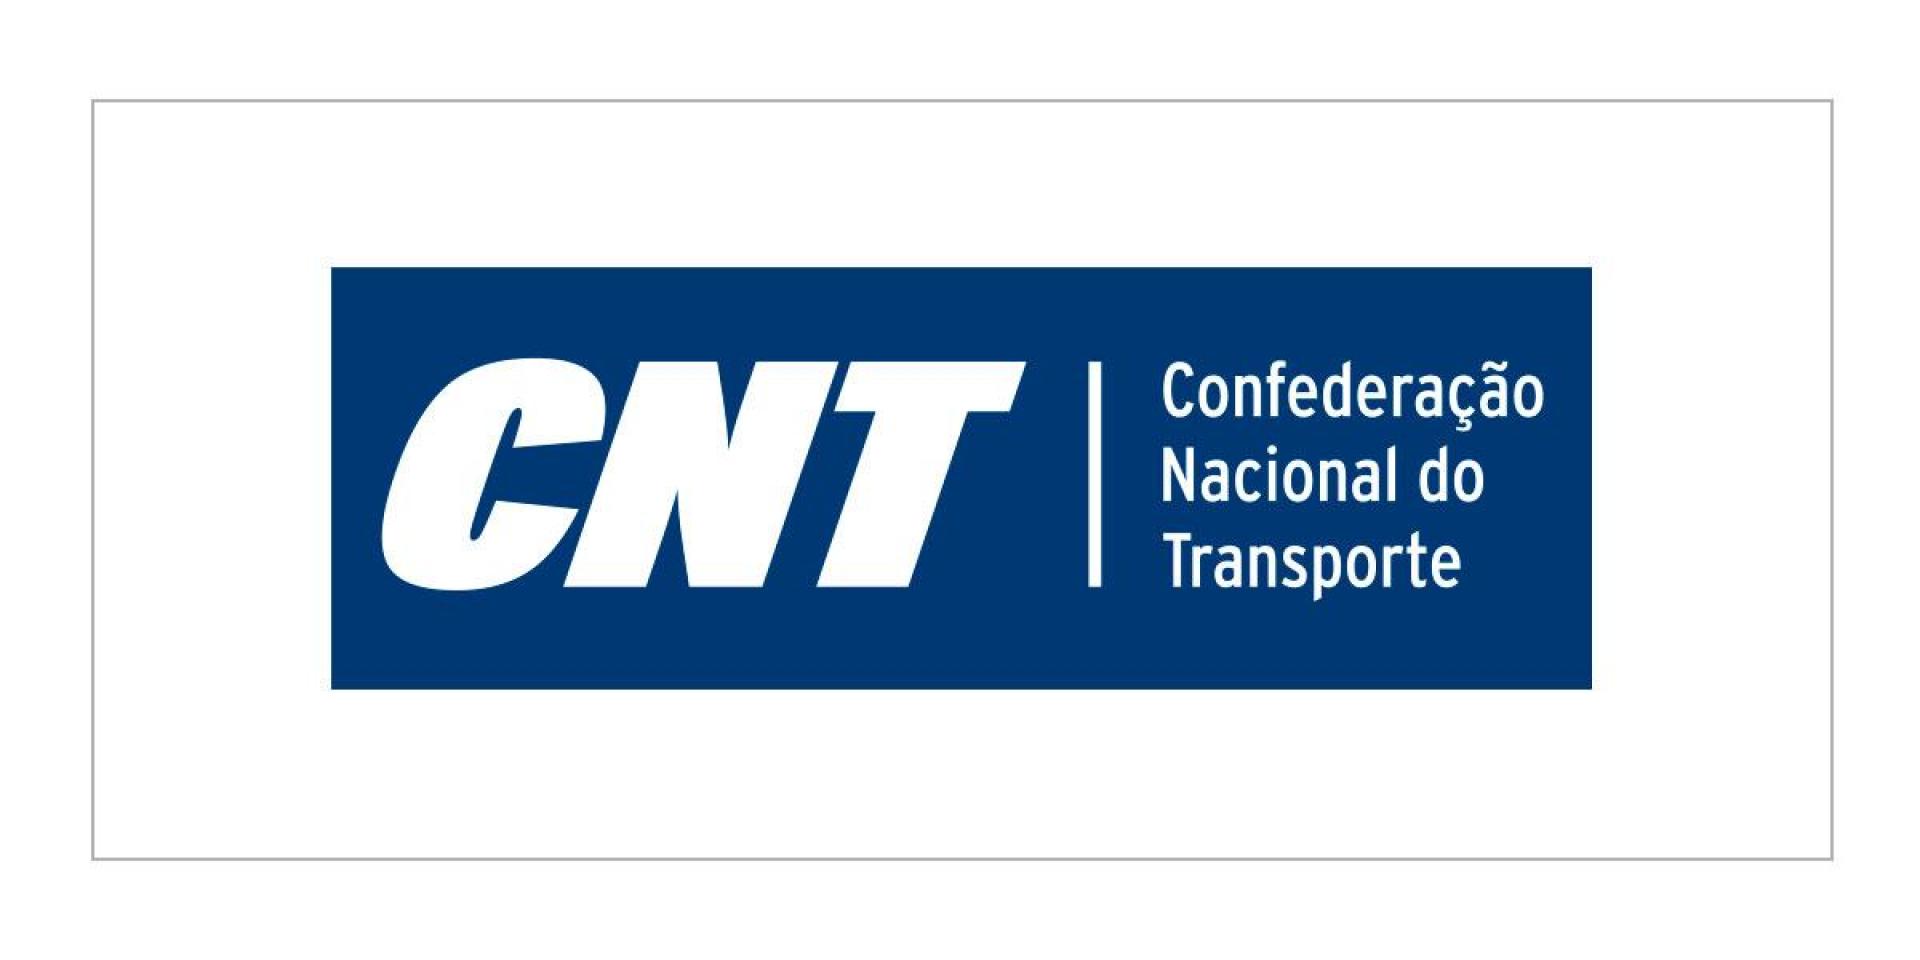 Confederação Nacional do Transporte